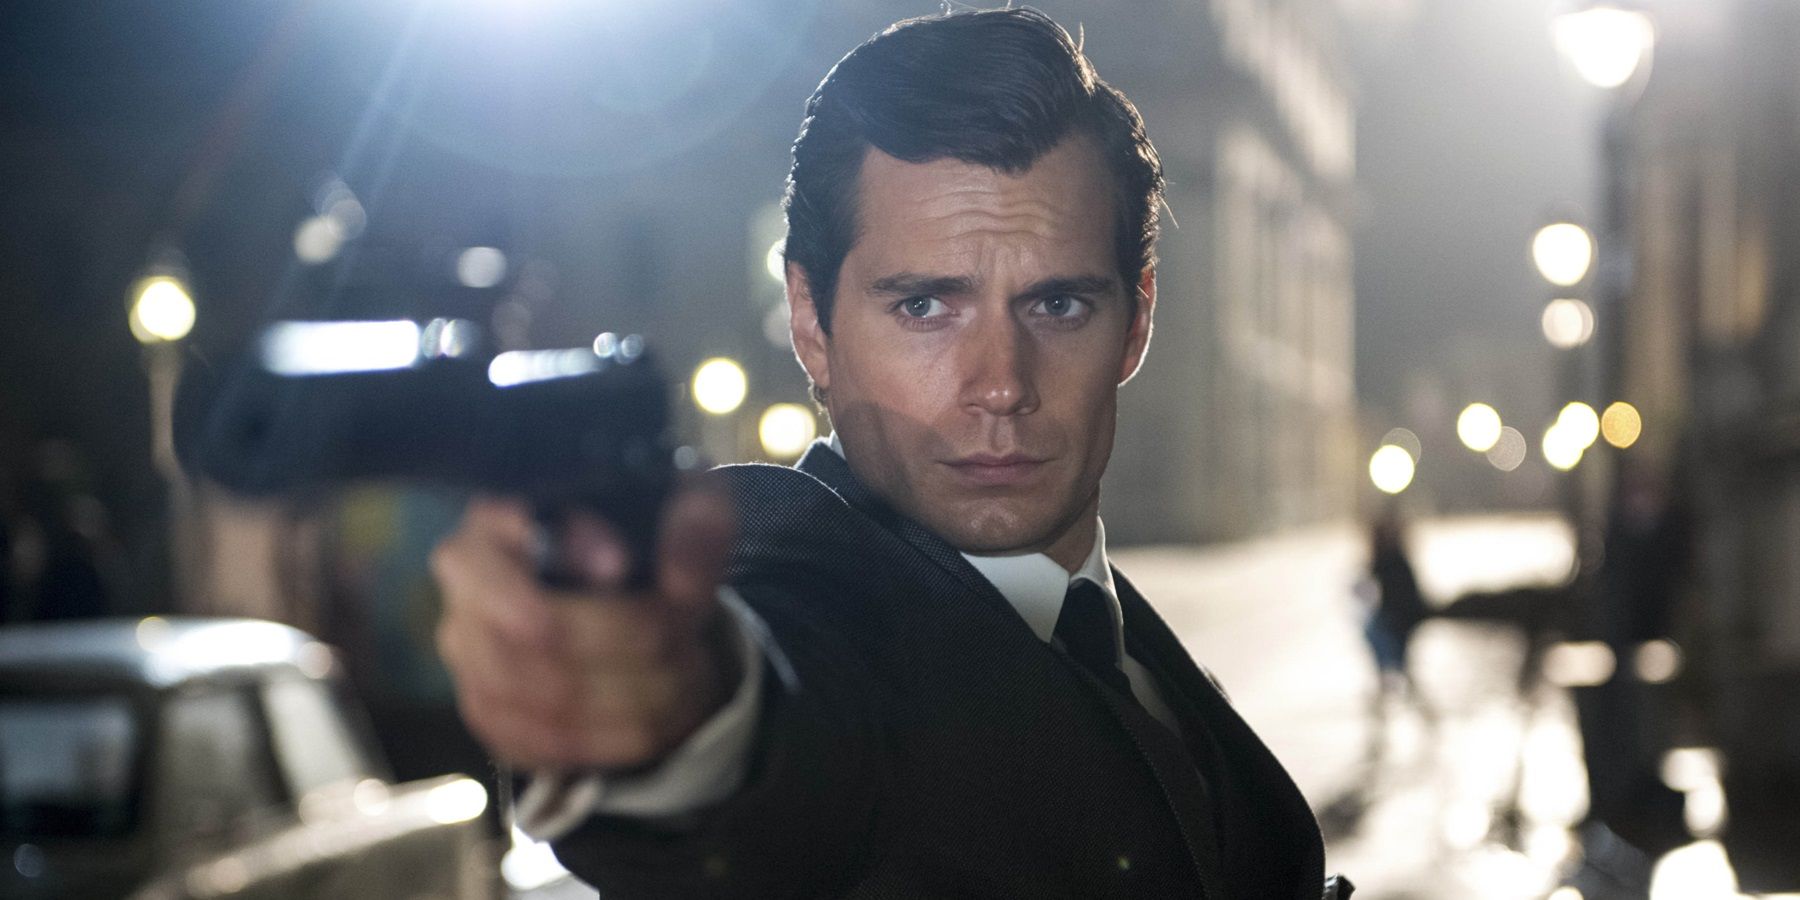 El tráiler falso de James Bond 26 protagonizado por Henry Cavill obtiene millones de visitas